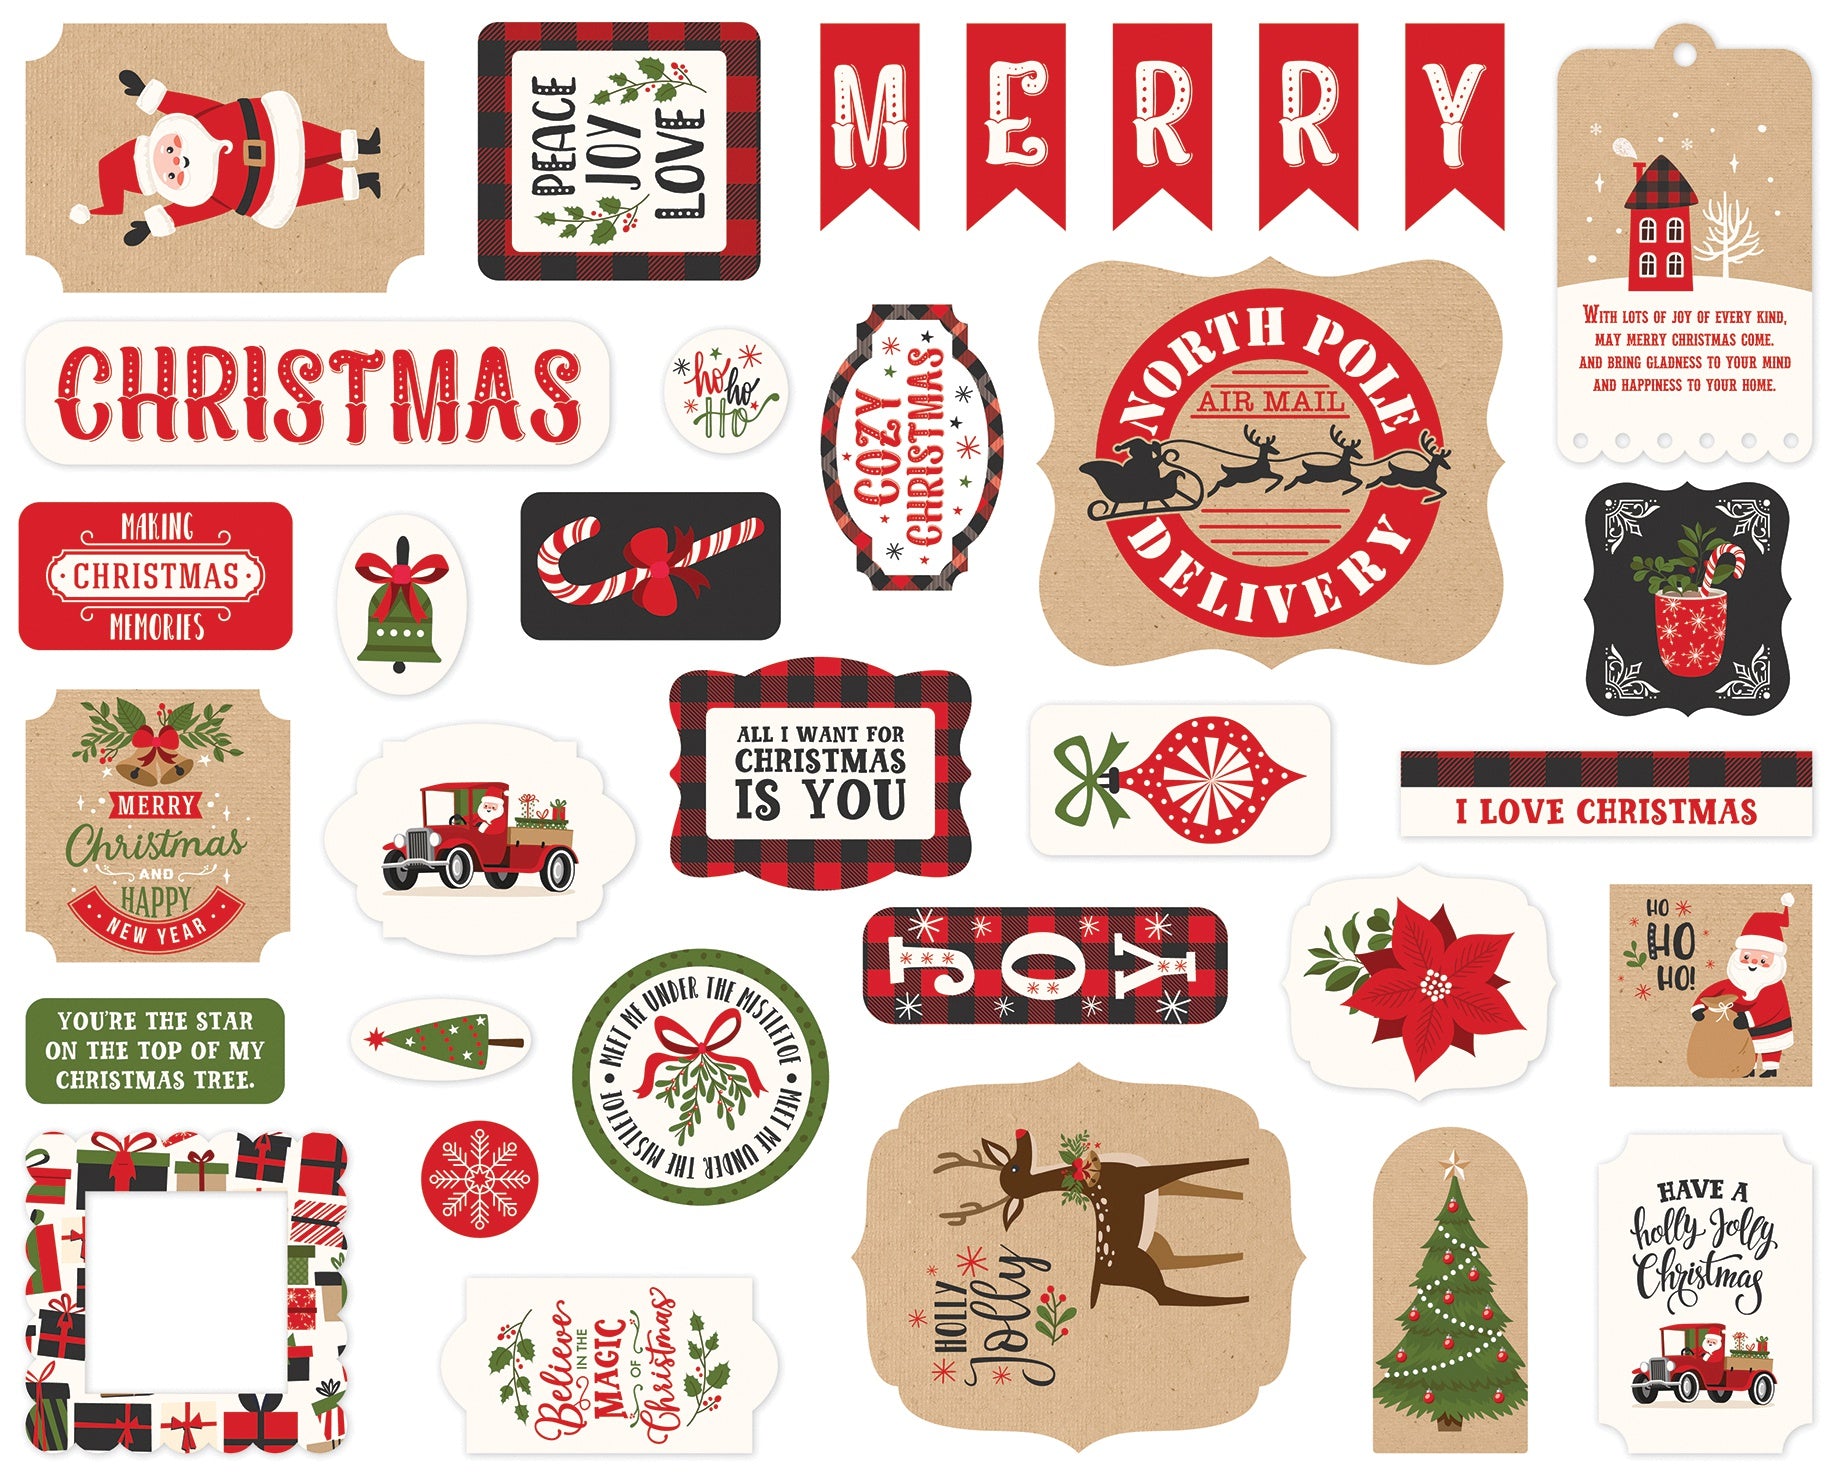 My Favorite Christmas Ephemera Cardstock Pieces